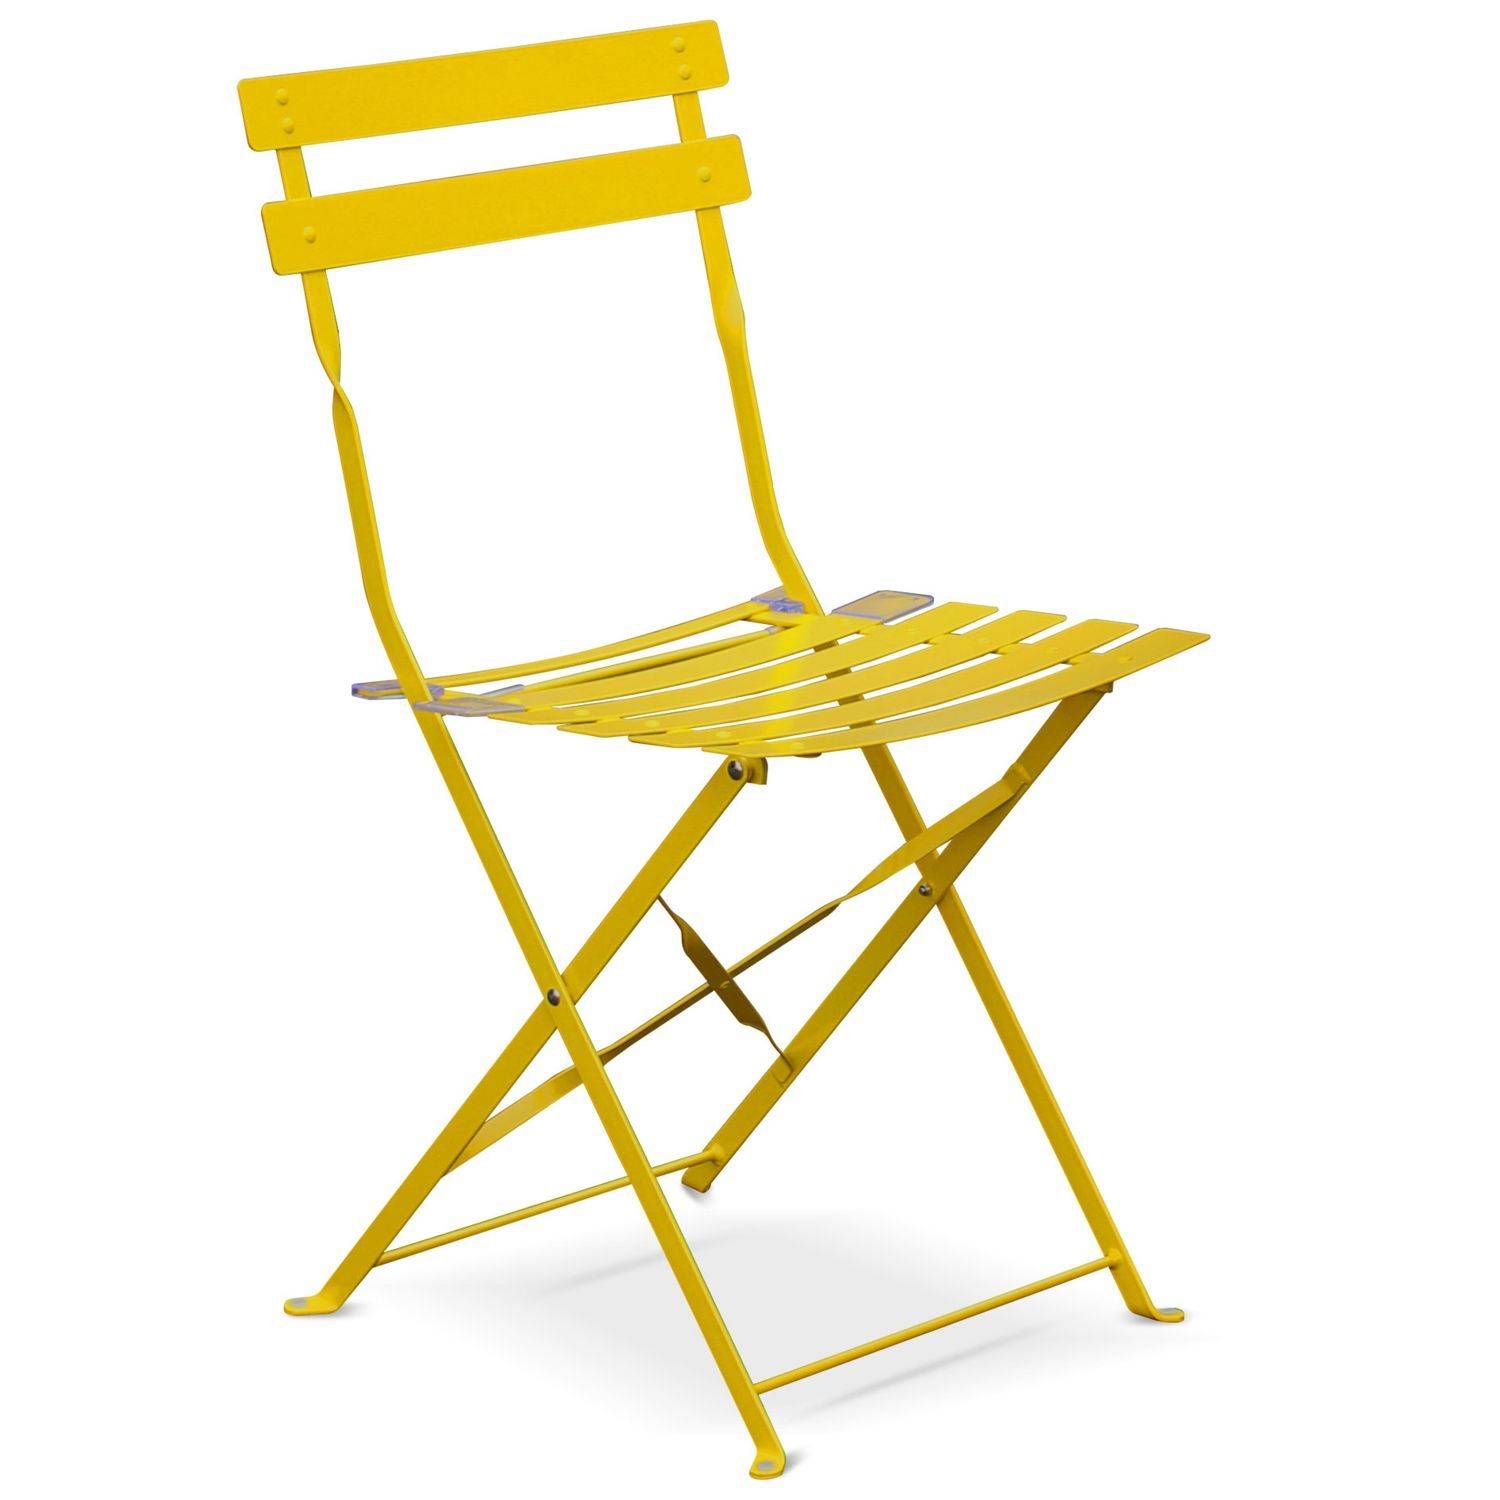 Klappbare Bistro-Gartengarnitur - Rechteckig Emilia gelb - 110 x 70 cm großer Tisch mit vier Klappstühlen aus pulverbeschichtetem Stahl Photo4